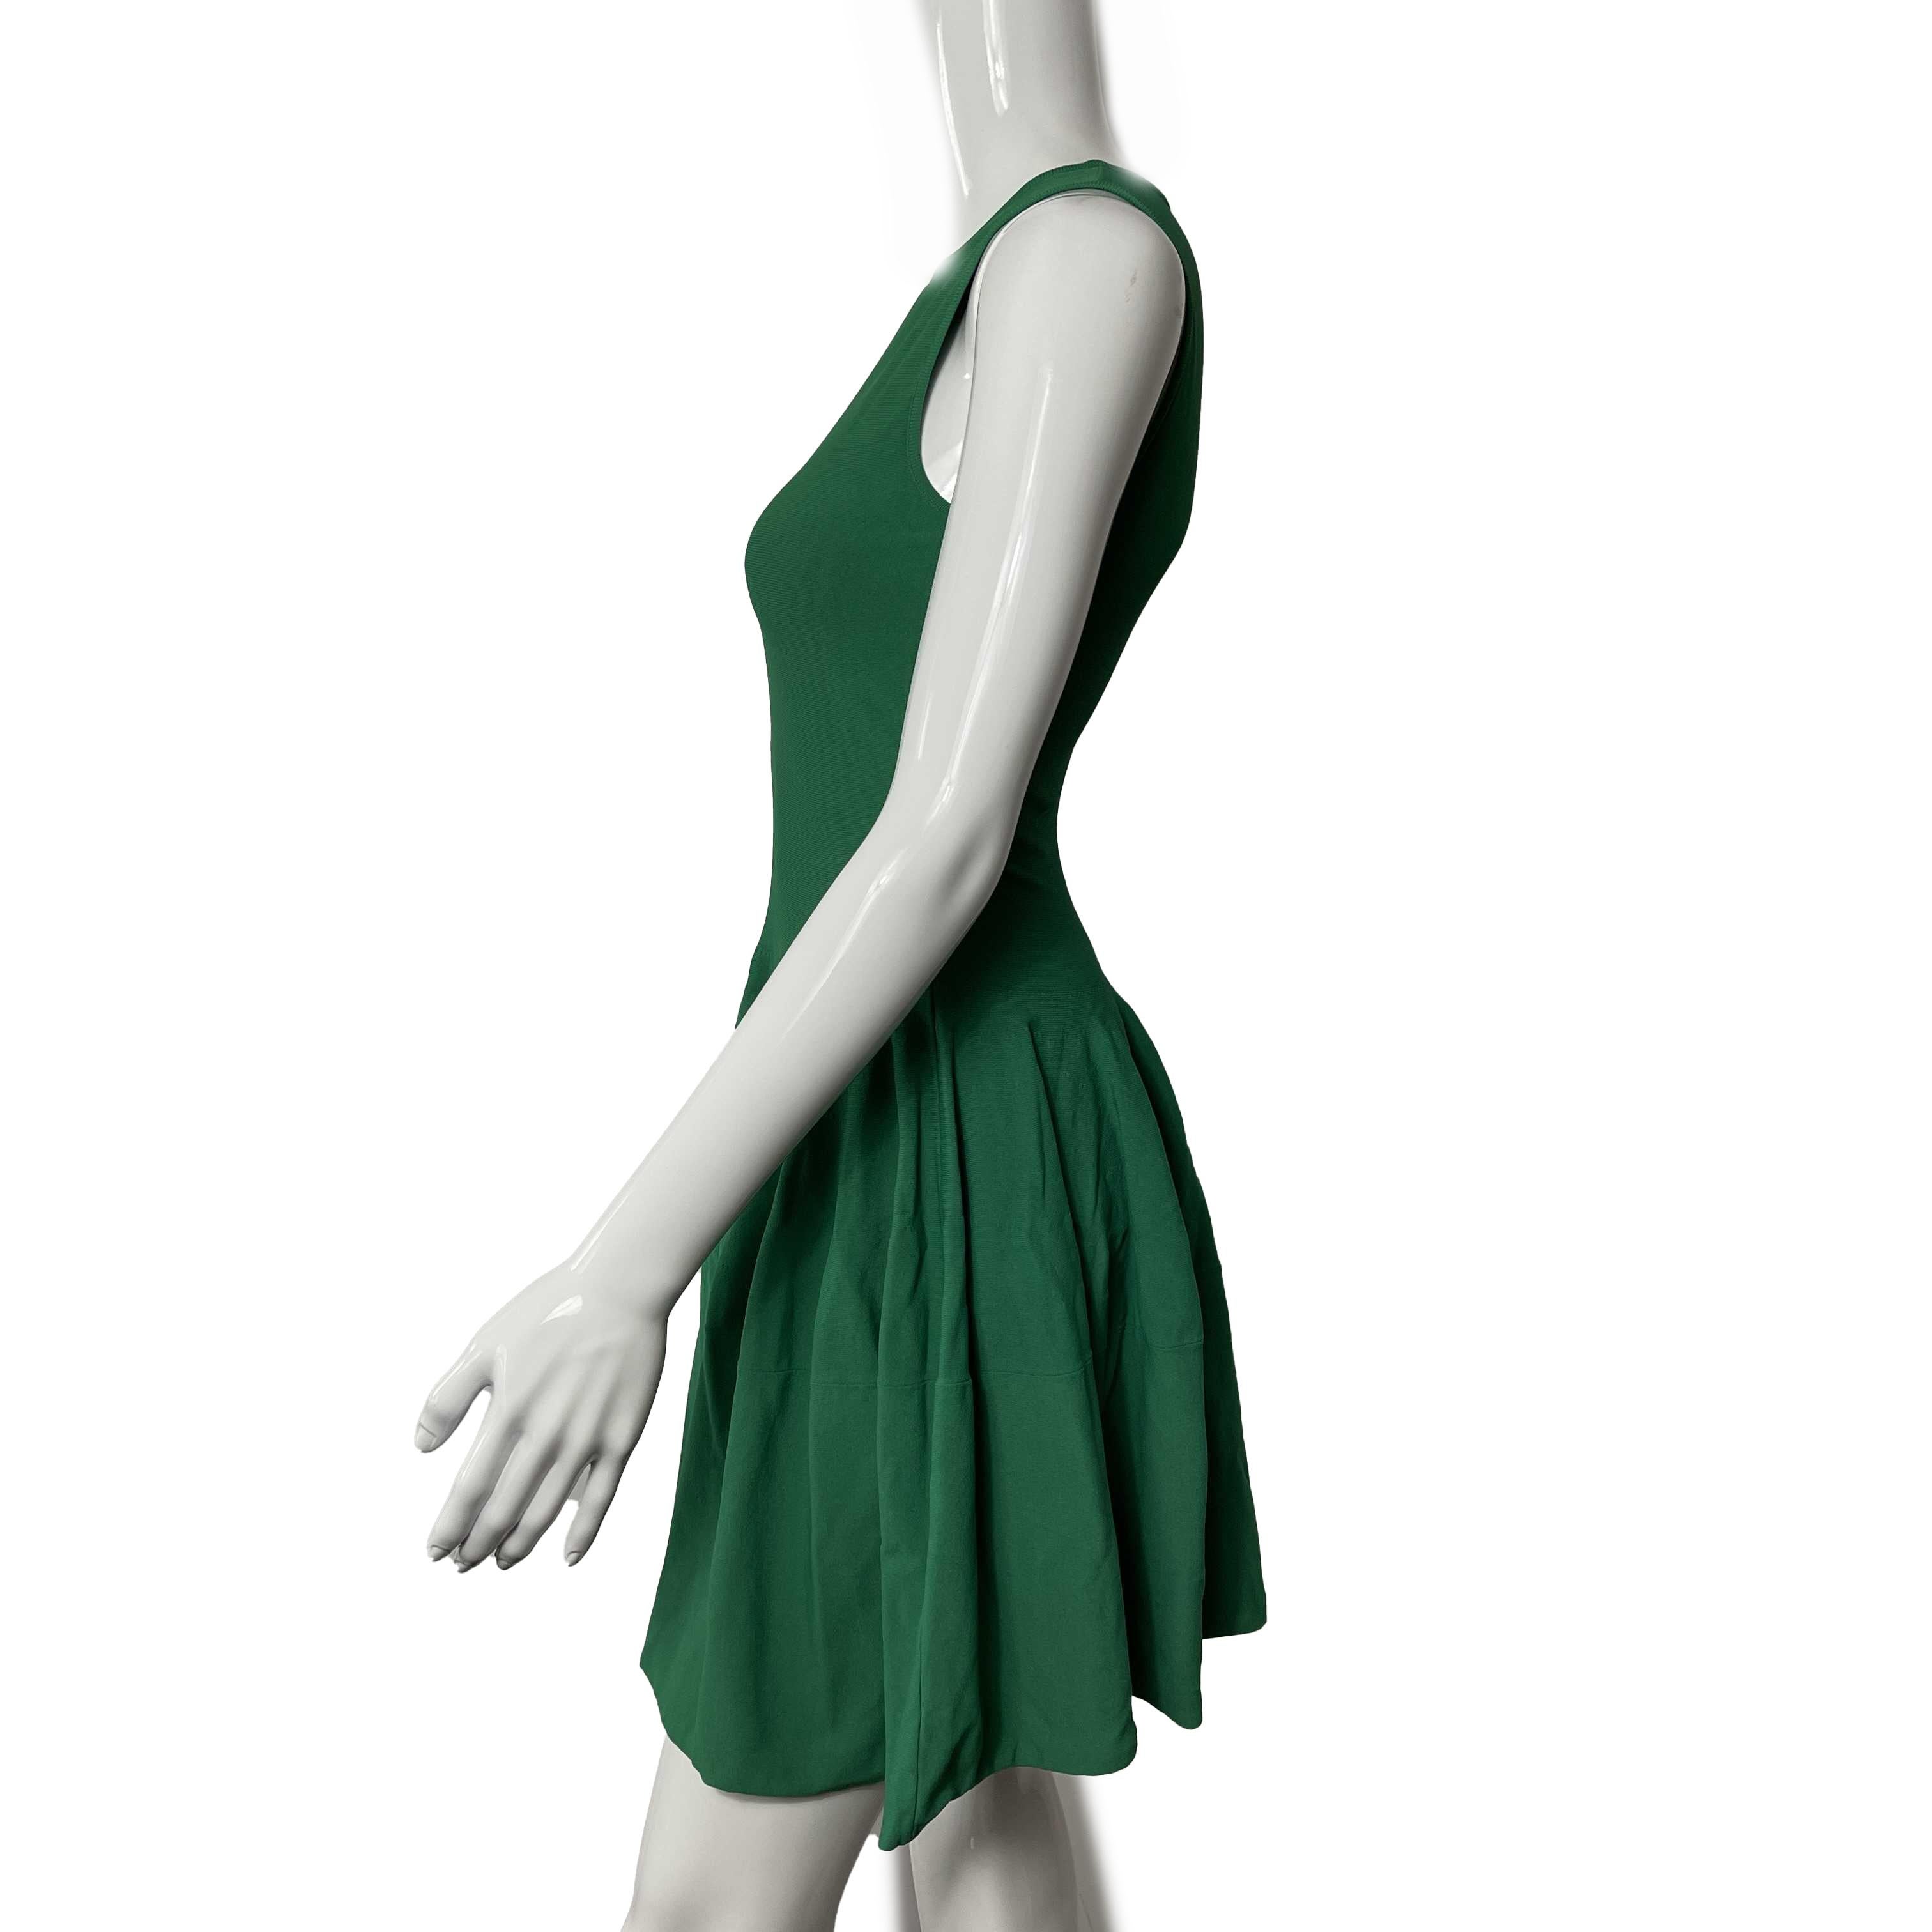 Alexander McQueen - Pristine - Solide ärmellose Midi-Schlaghose - Grün - XS - Kleid

Beschreibung

Dieses ärmellose Kleid von Alexander McQueen ist mittellang und hat einen ausgestellten Schnitt, der wie in Falten fällt.
Es ist einfarbig grün,